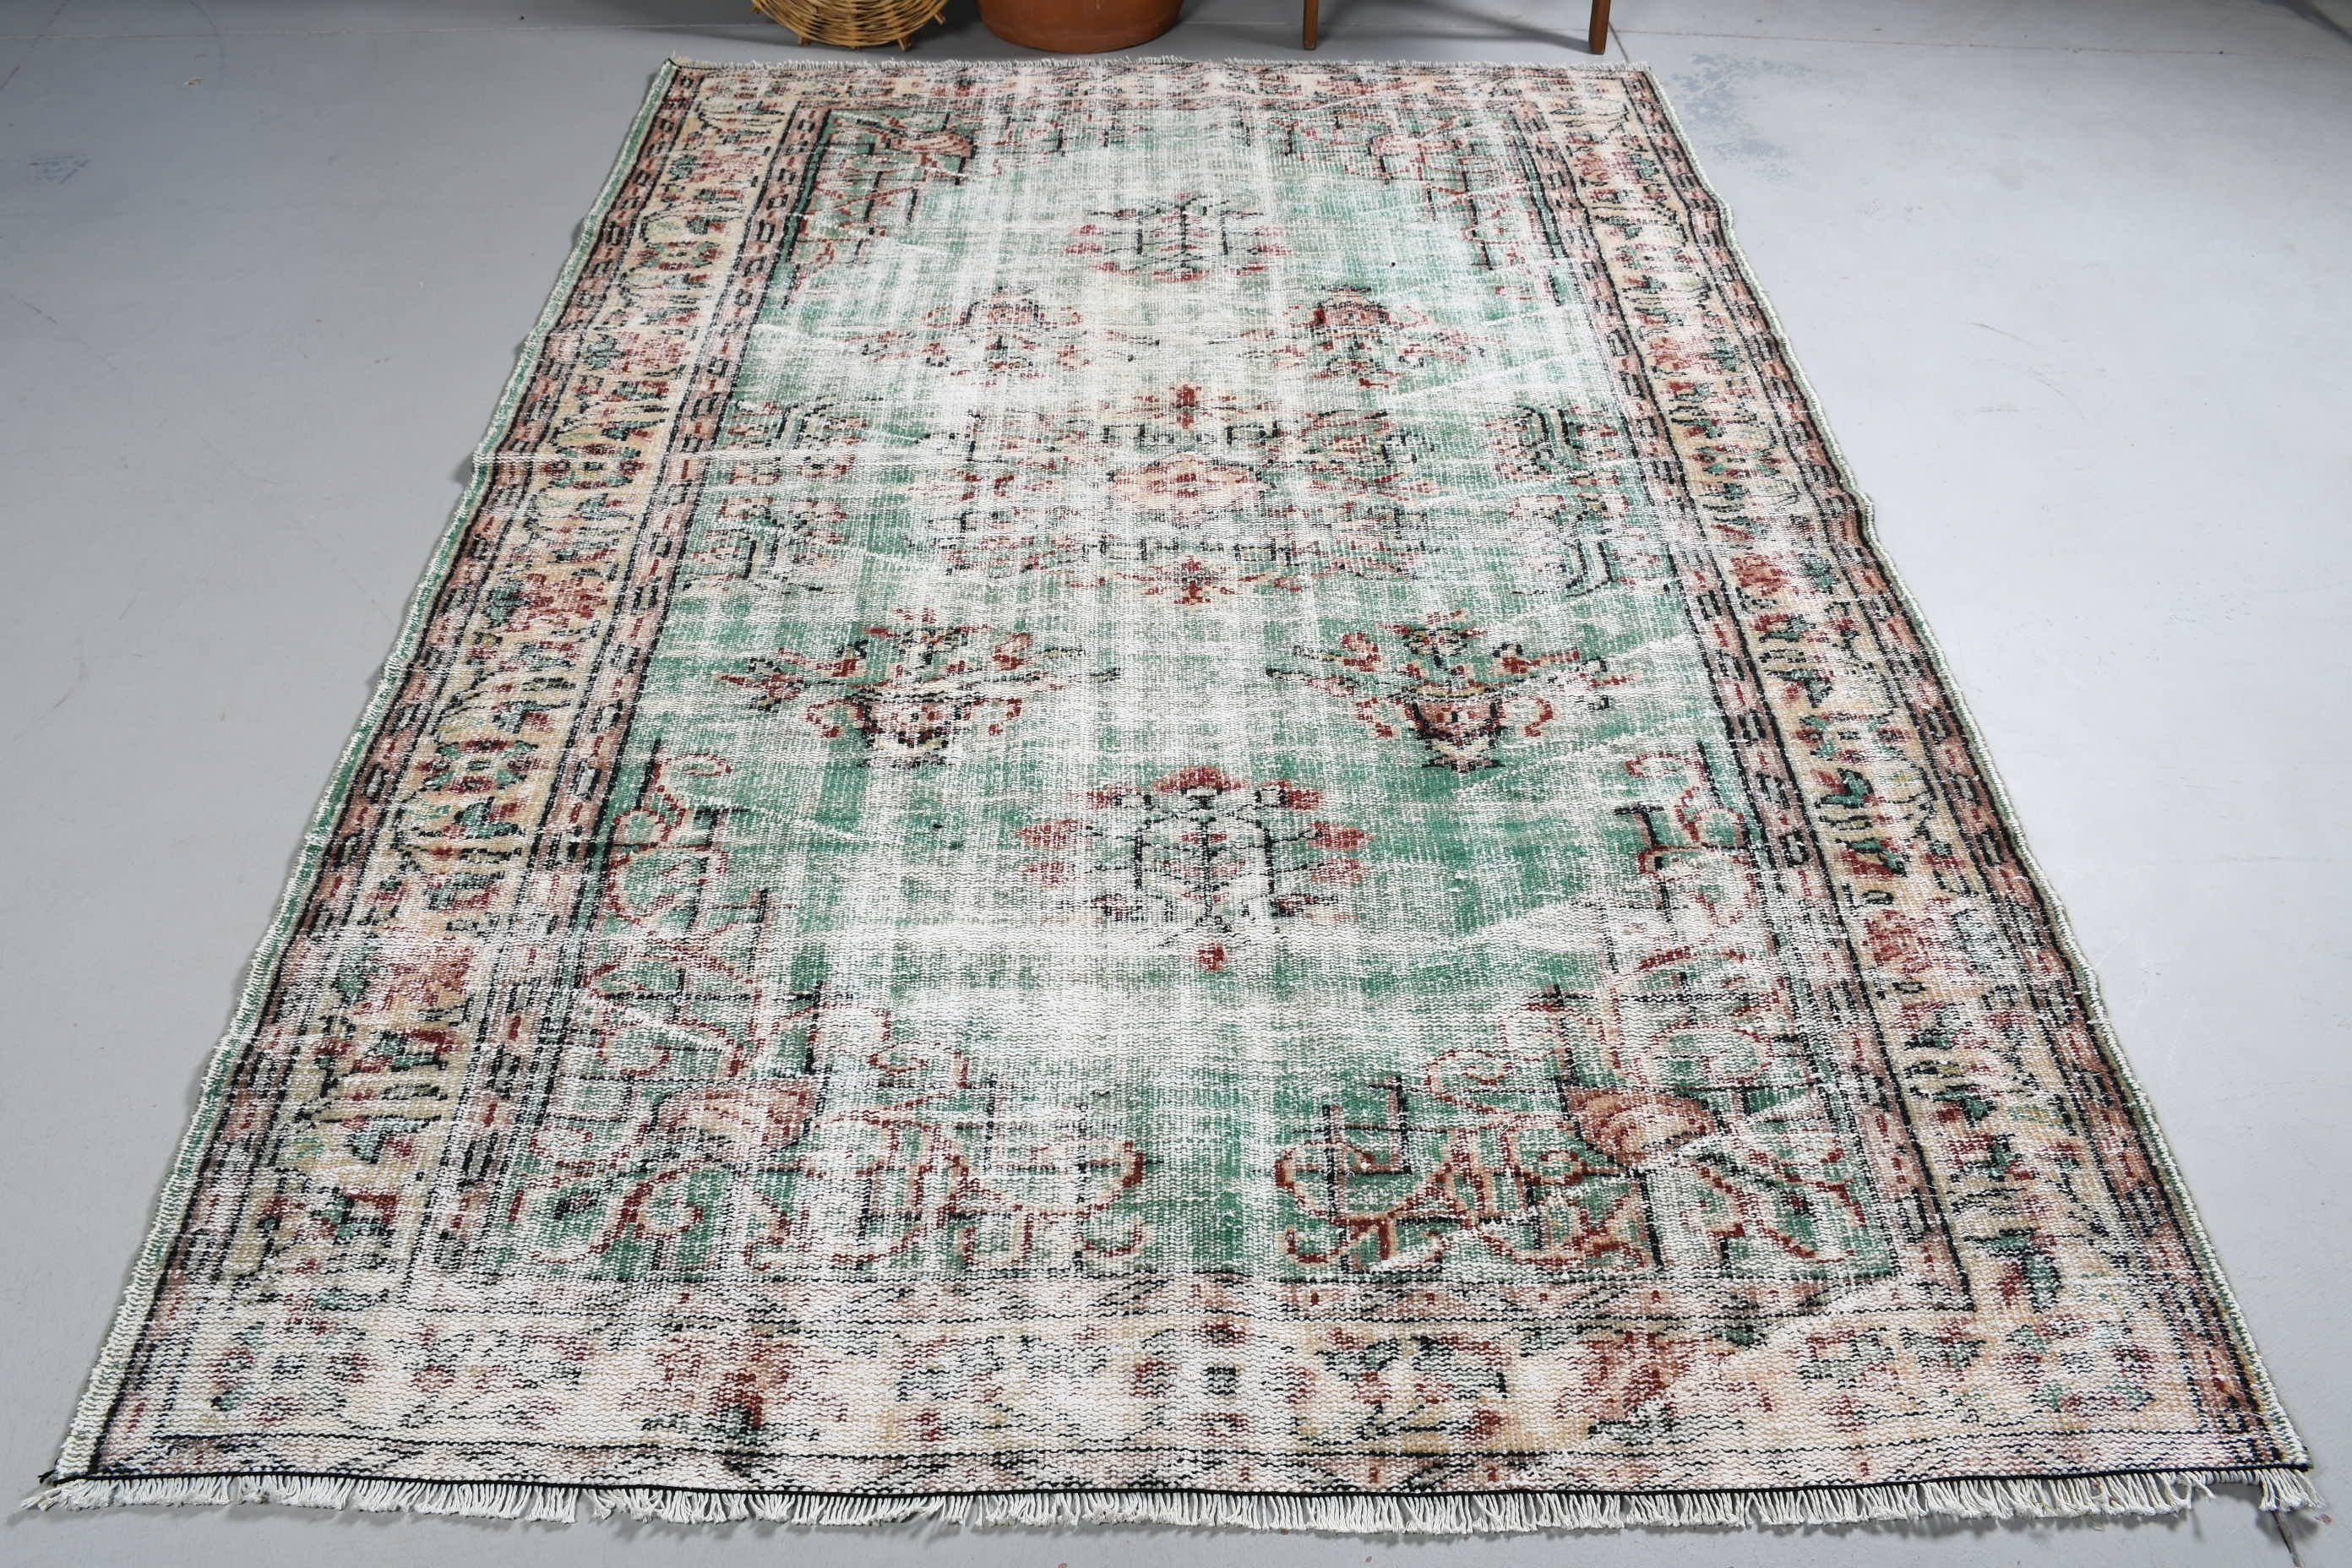 5.6x8.1 ft Large Rugs, Turkish Rug, Dining Room Rugs, Green Moroccan Rugs, Living Room Rug, Bedroom Rug, Old Rug, Vintage Rug